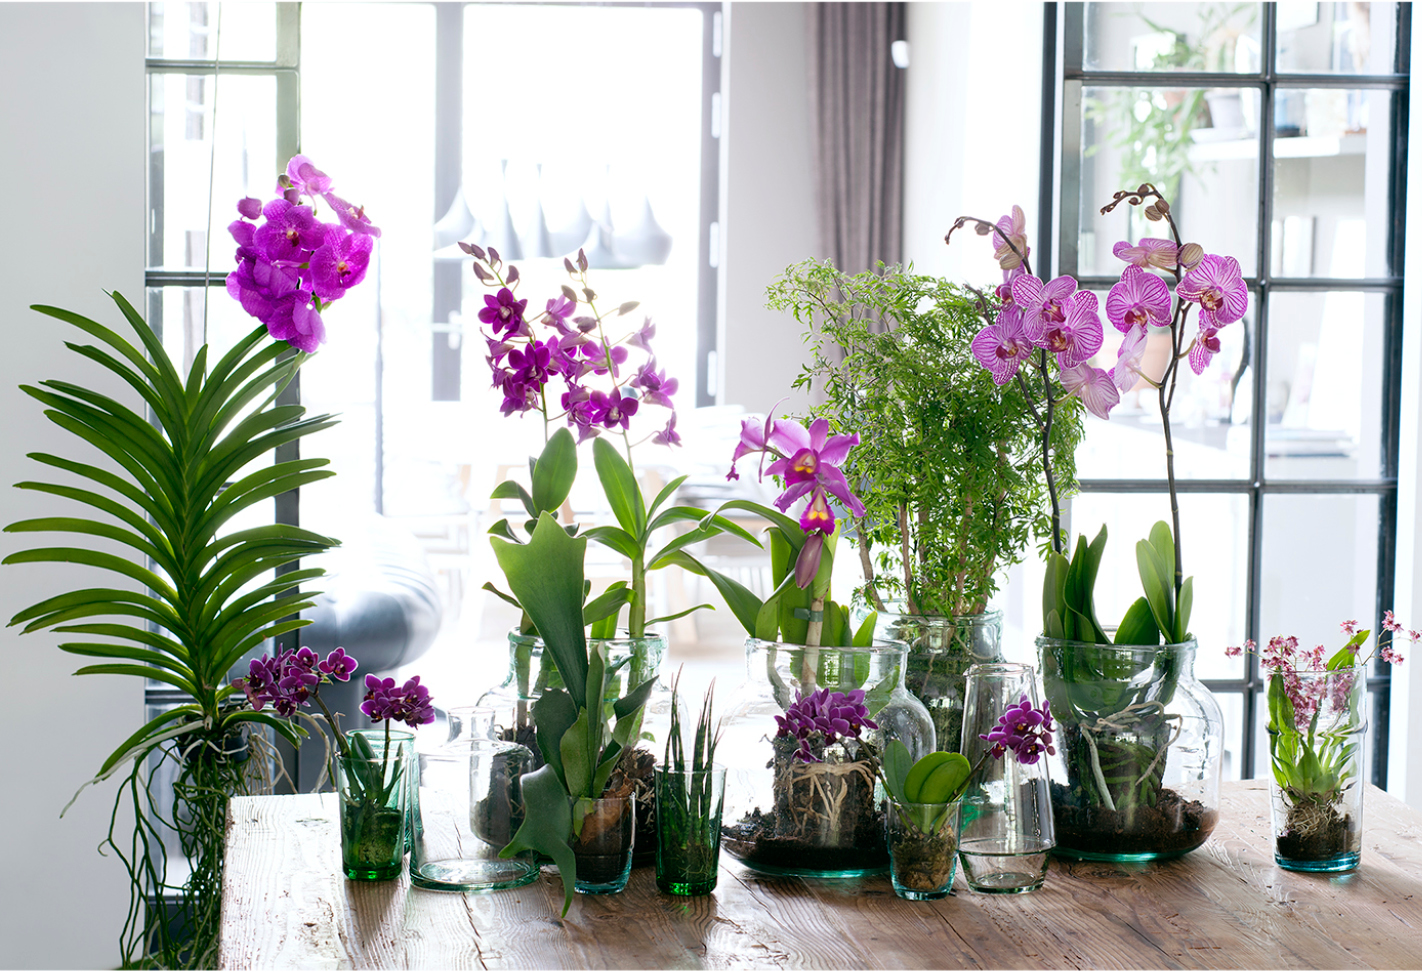 Орхидея и солнце: где лучше всего поставить горшок с цветком